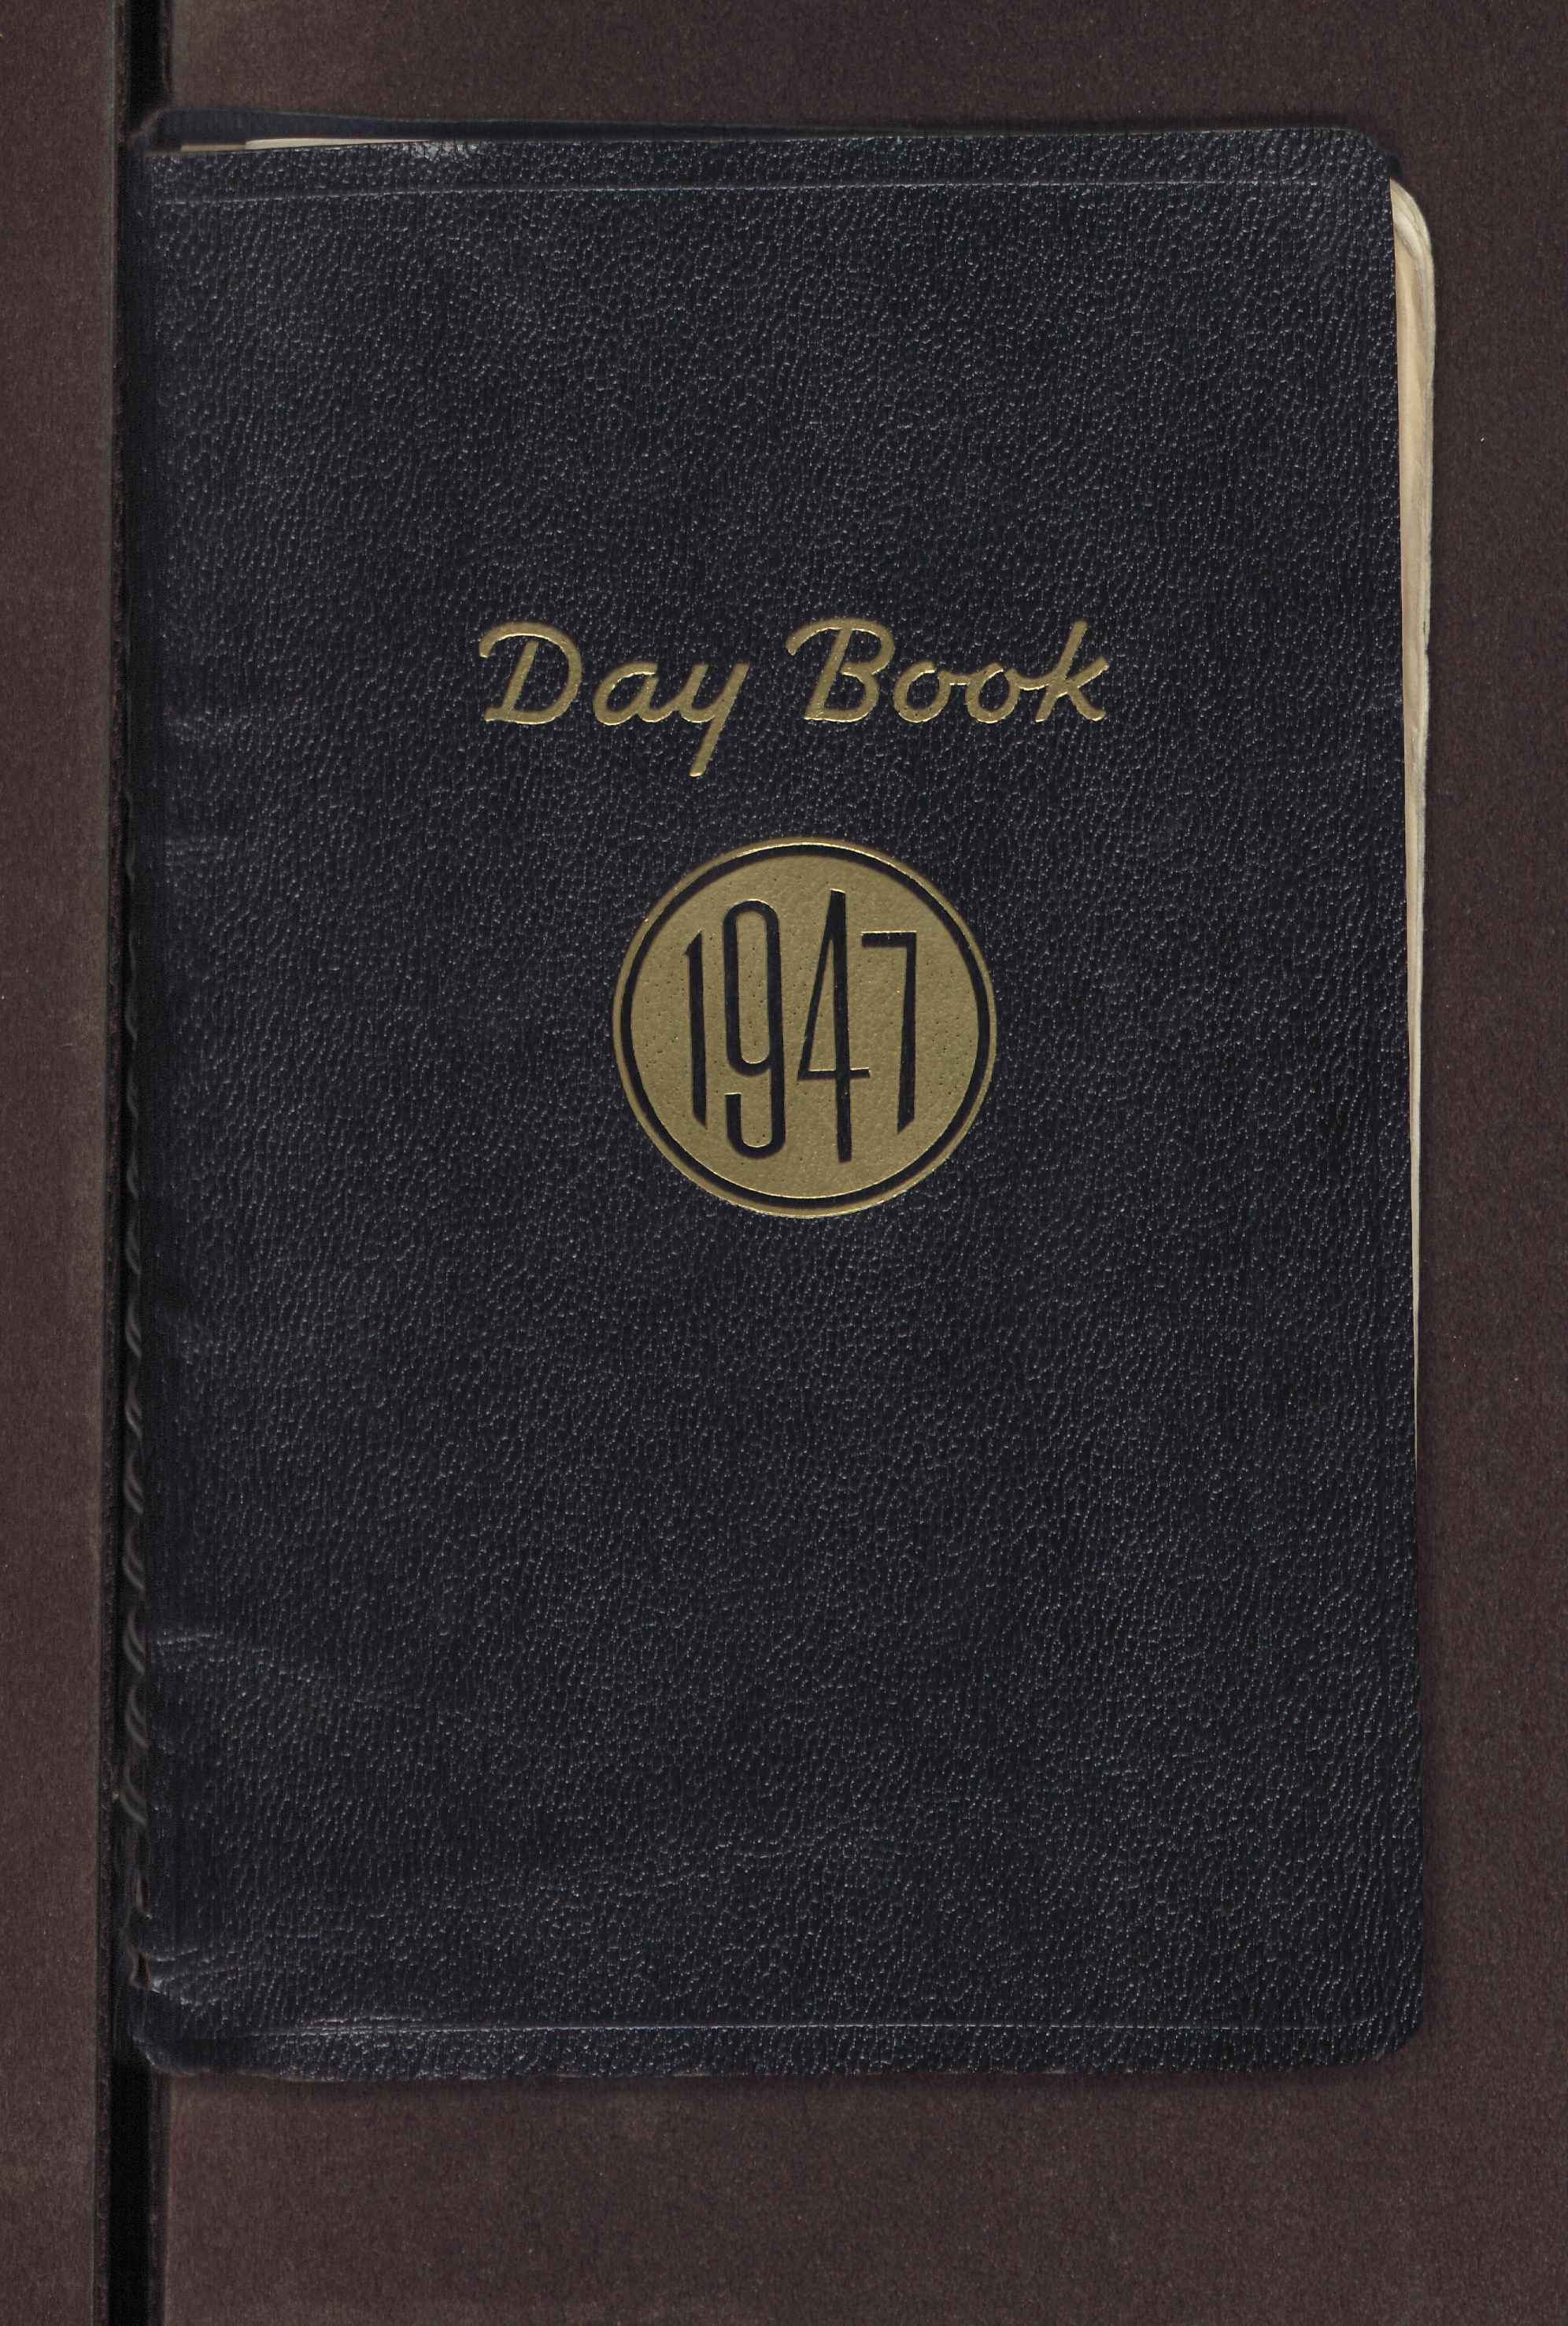 Tagebuch des Jahrgangs 1947 (EAM NL Faulhaber 10026)